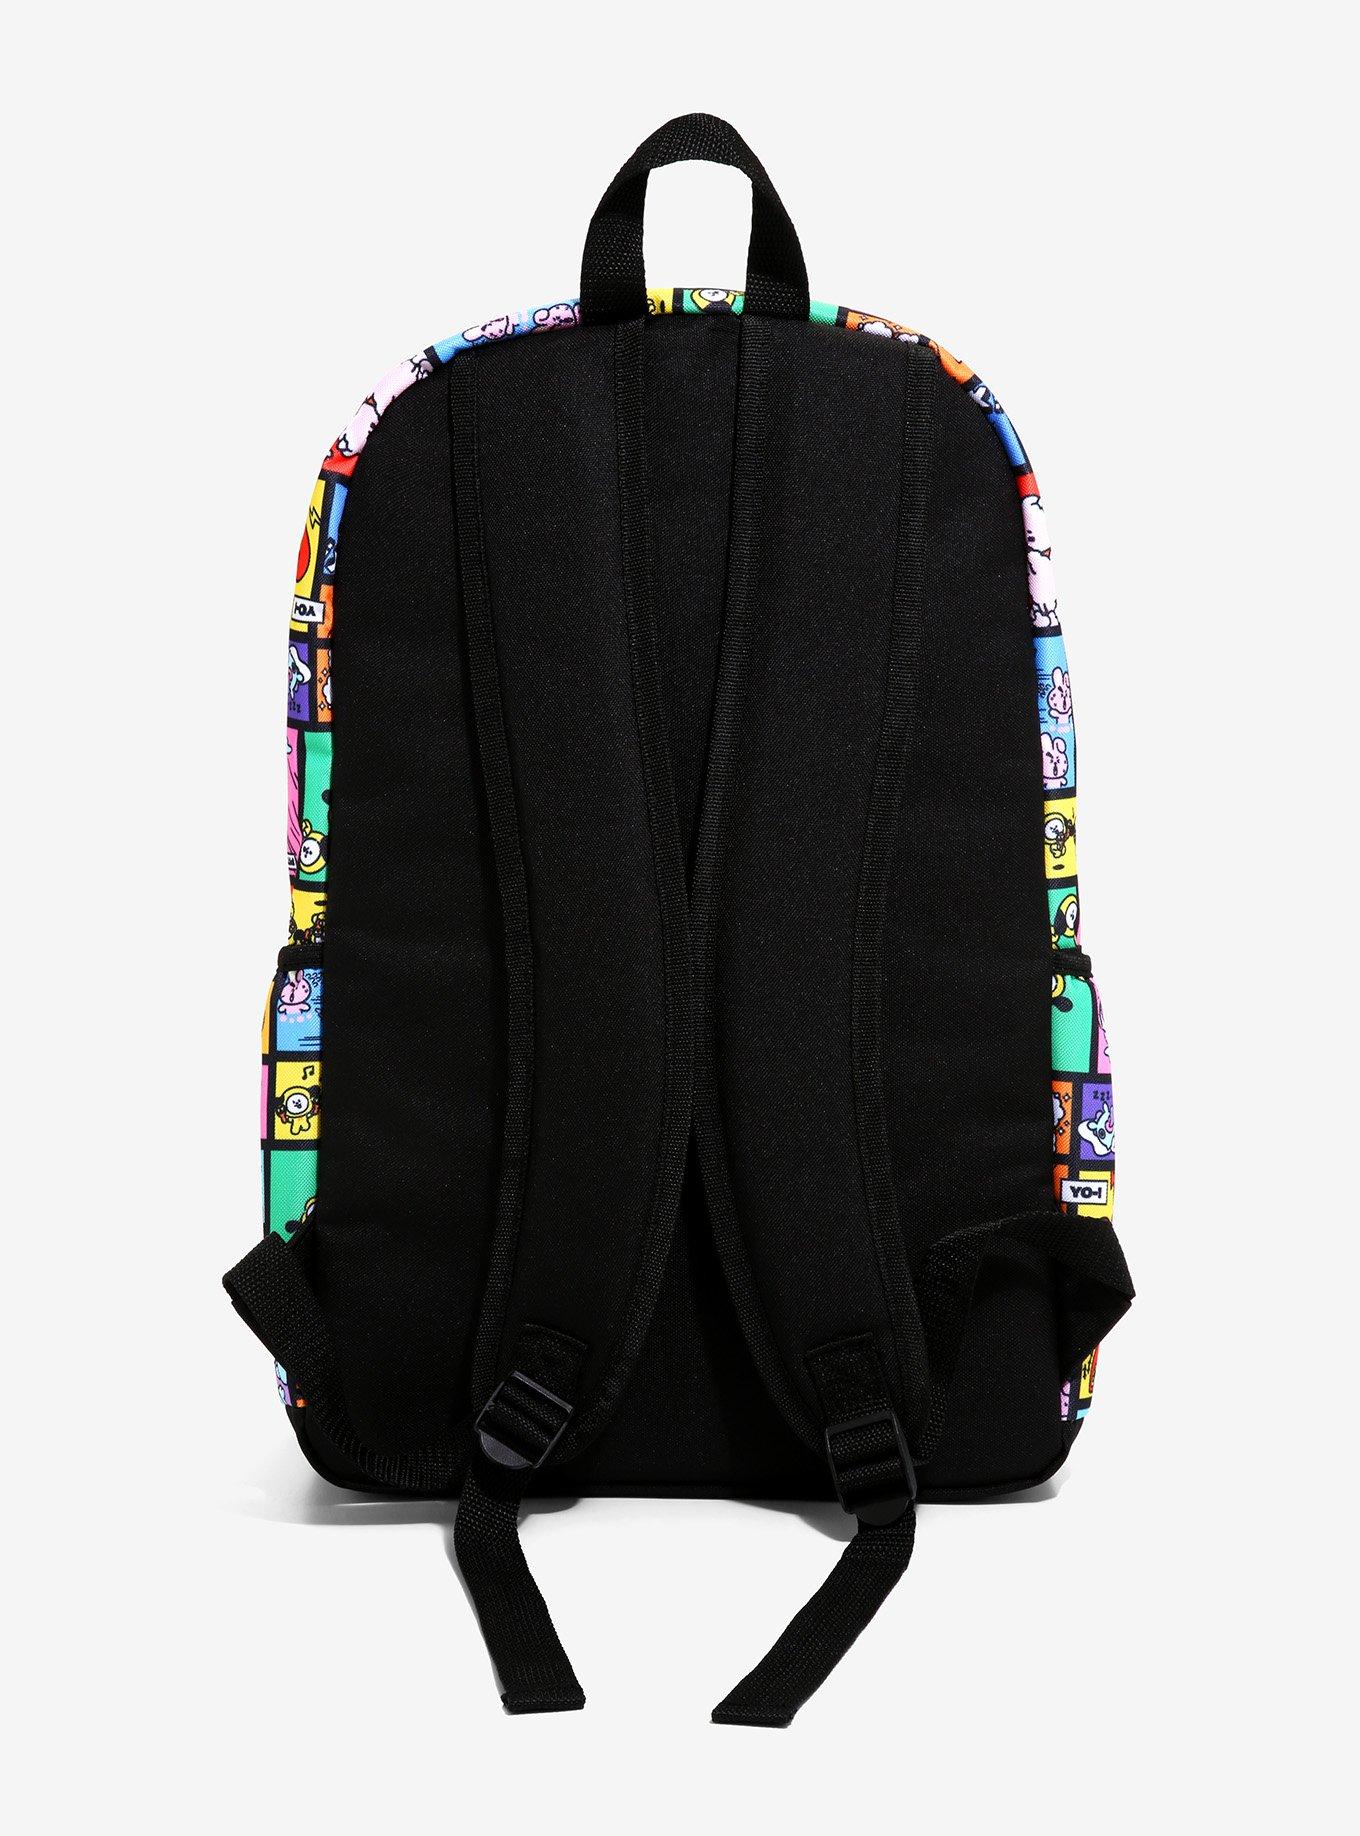 BT21 Color Grid Backpack, , alternate